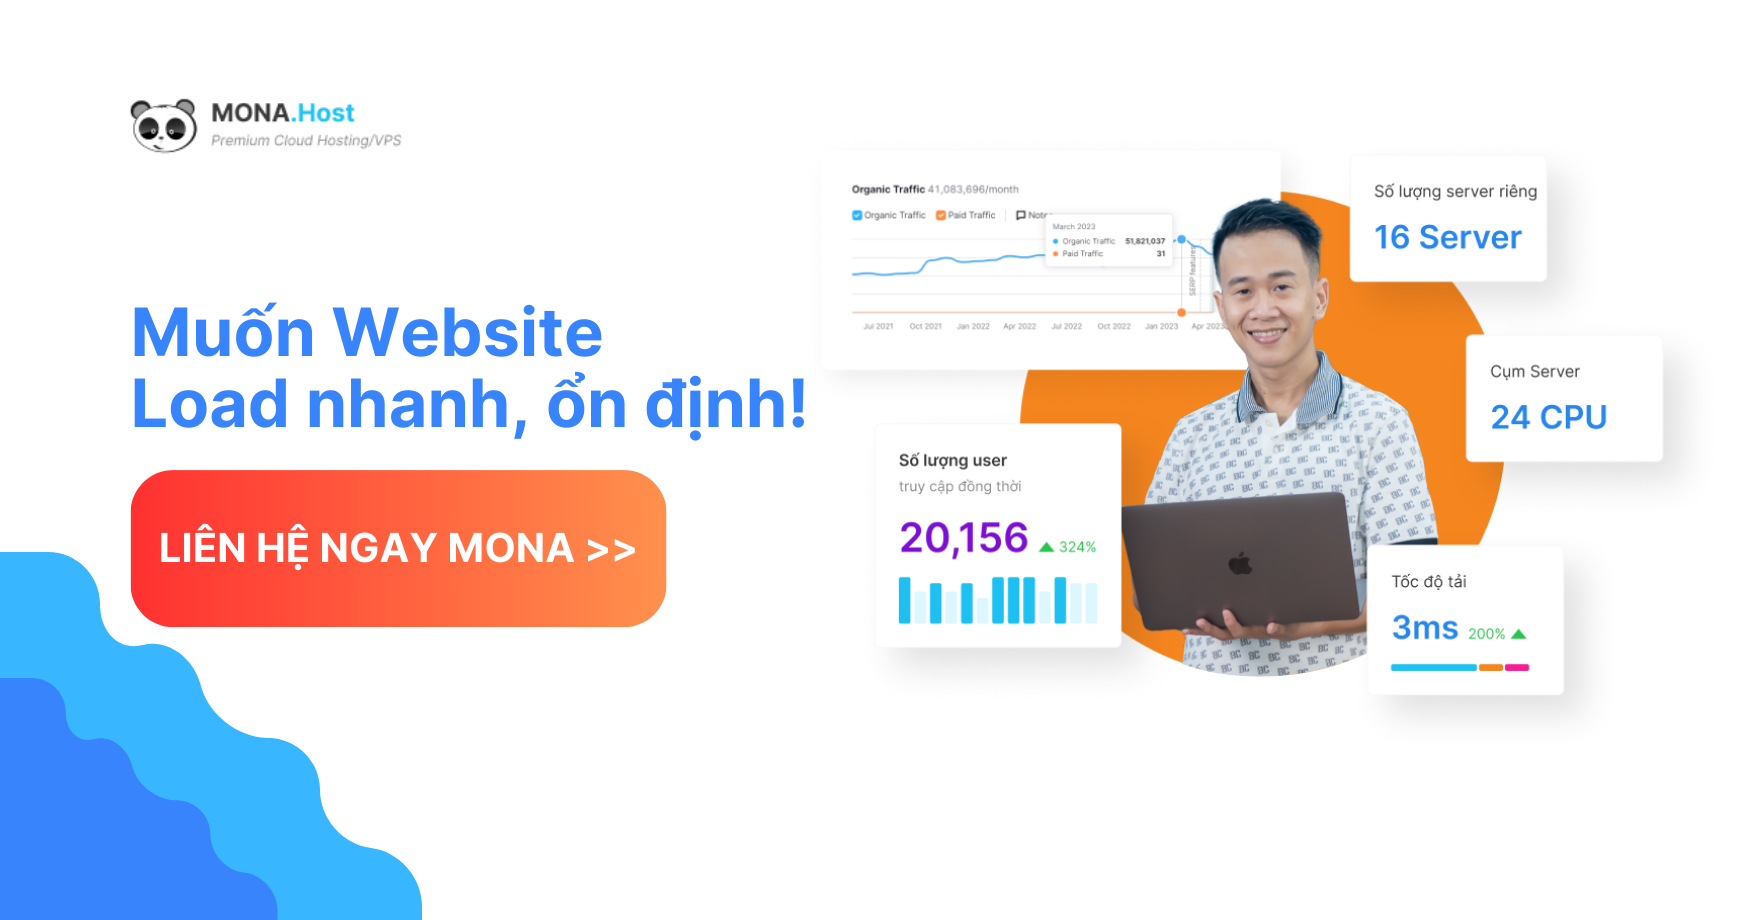 Muốn website ổn định, liên hệ ngay Mona nhé